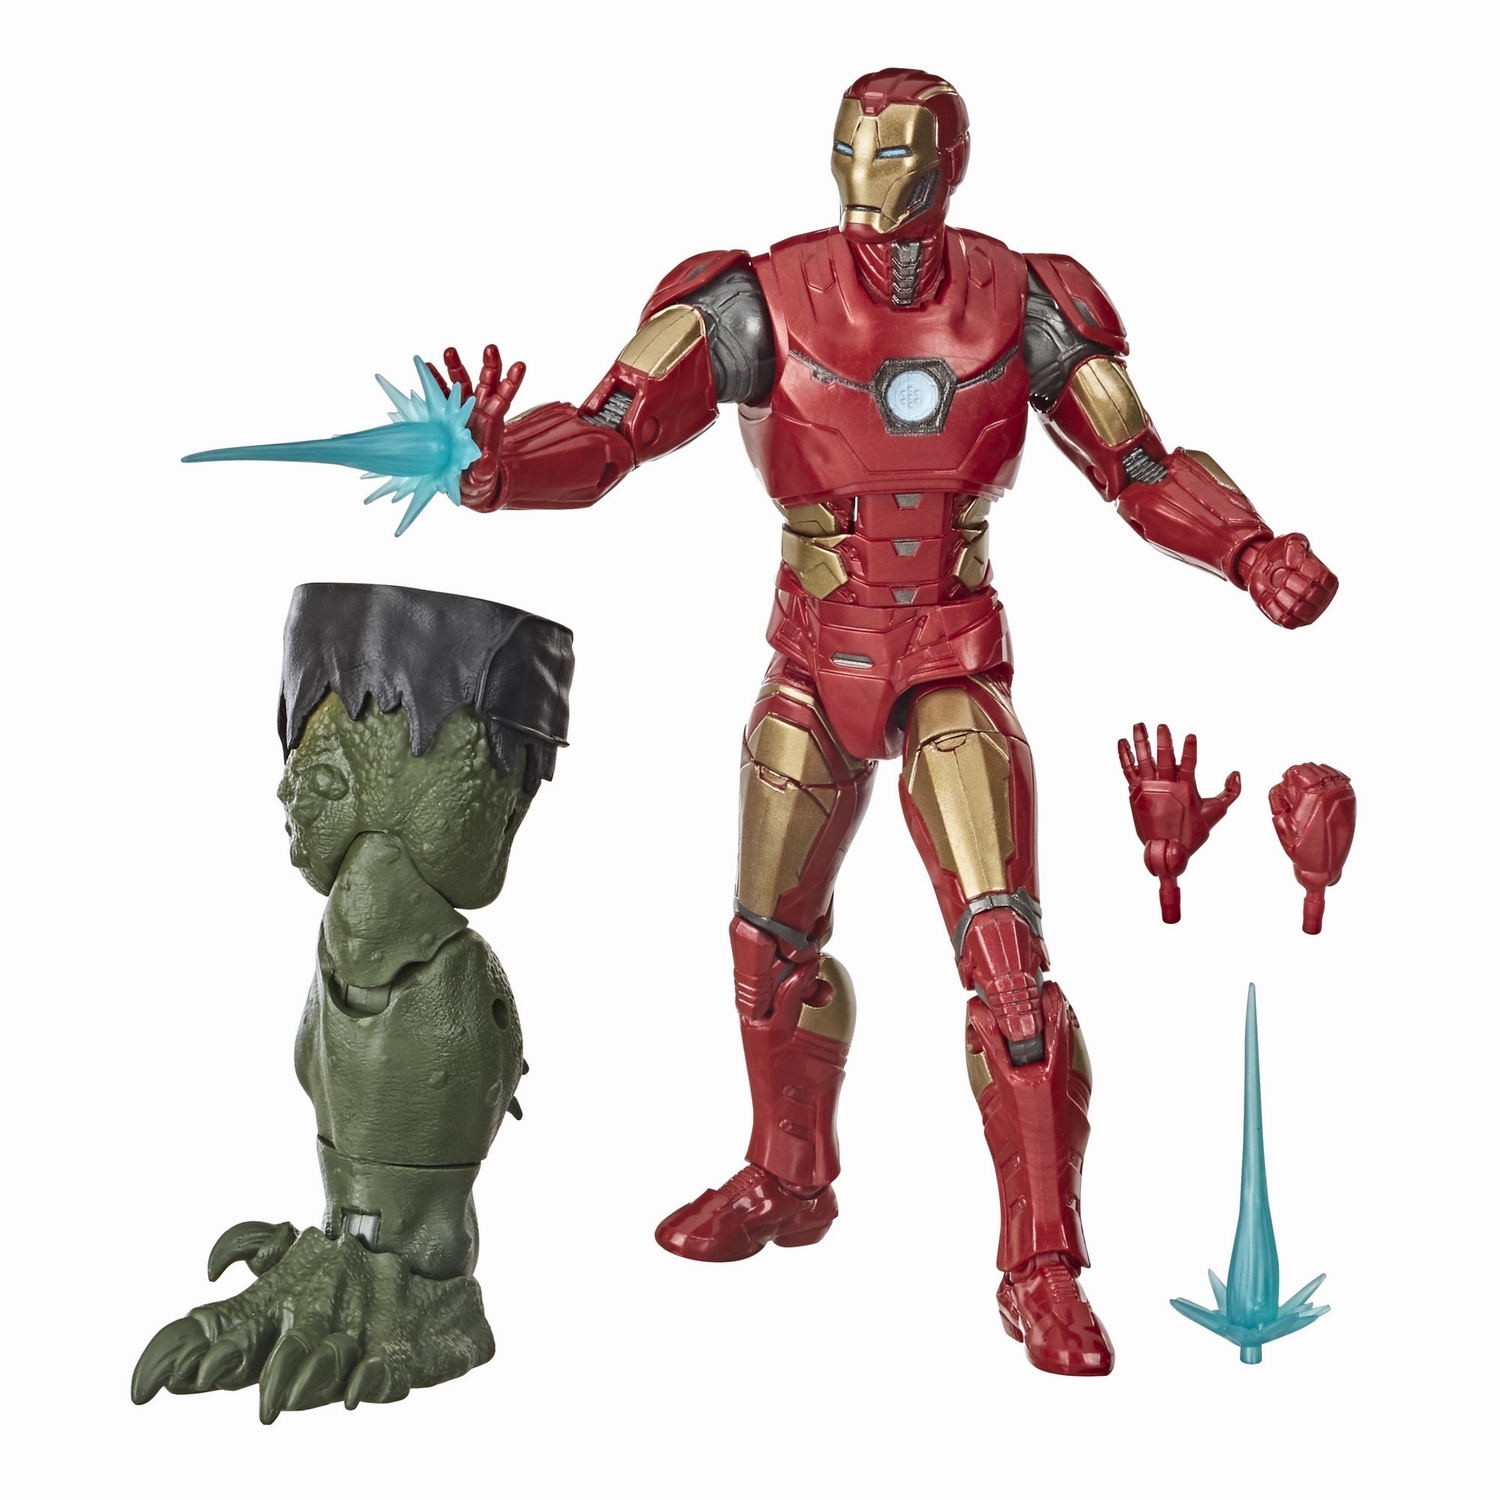 MARVEL LEGENDS SERIES GAMERVERSE 6-INCH Figure - Iron Man oop.jpg